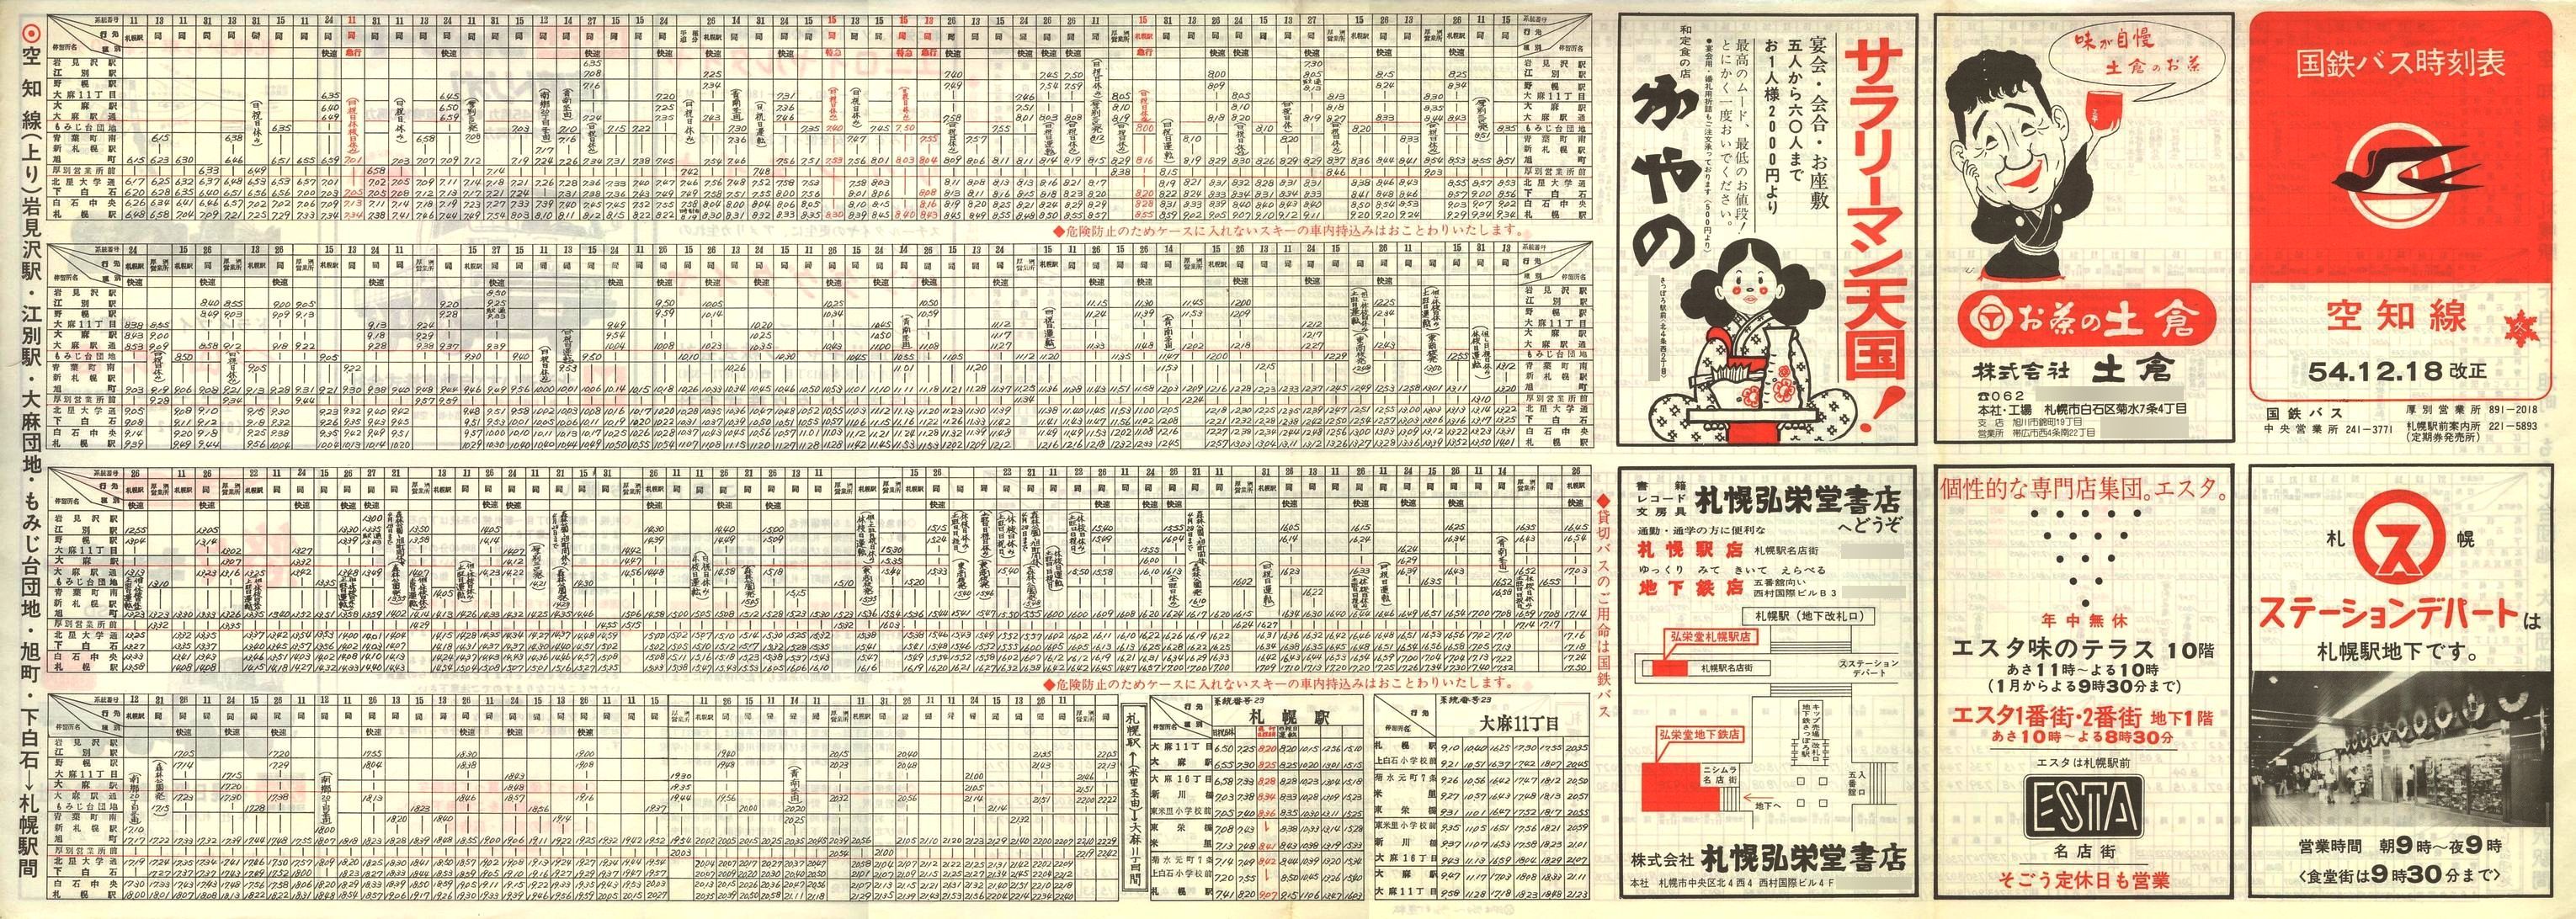 1979-12-18改正_国鉄バス_空知線時刻表表面